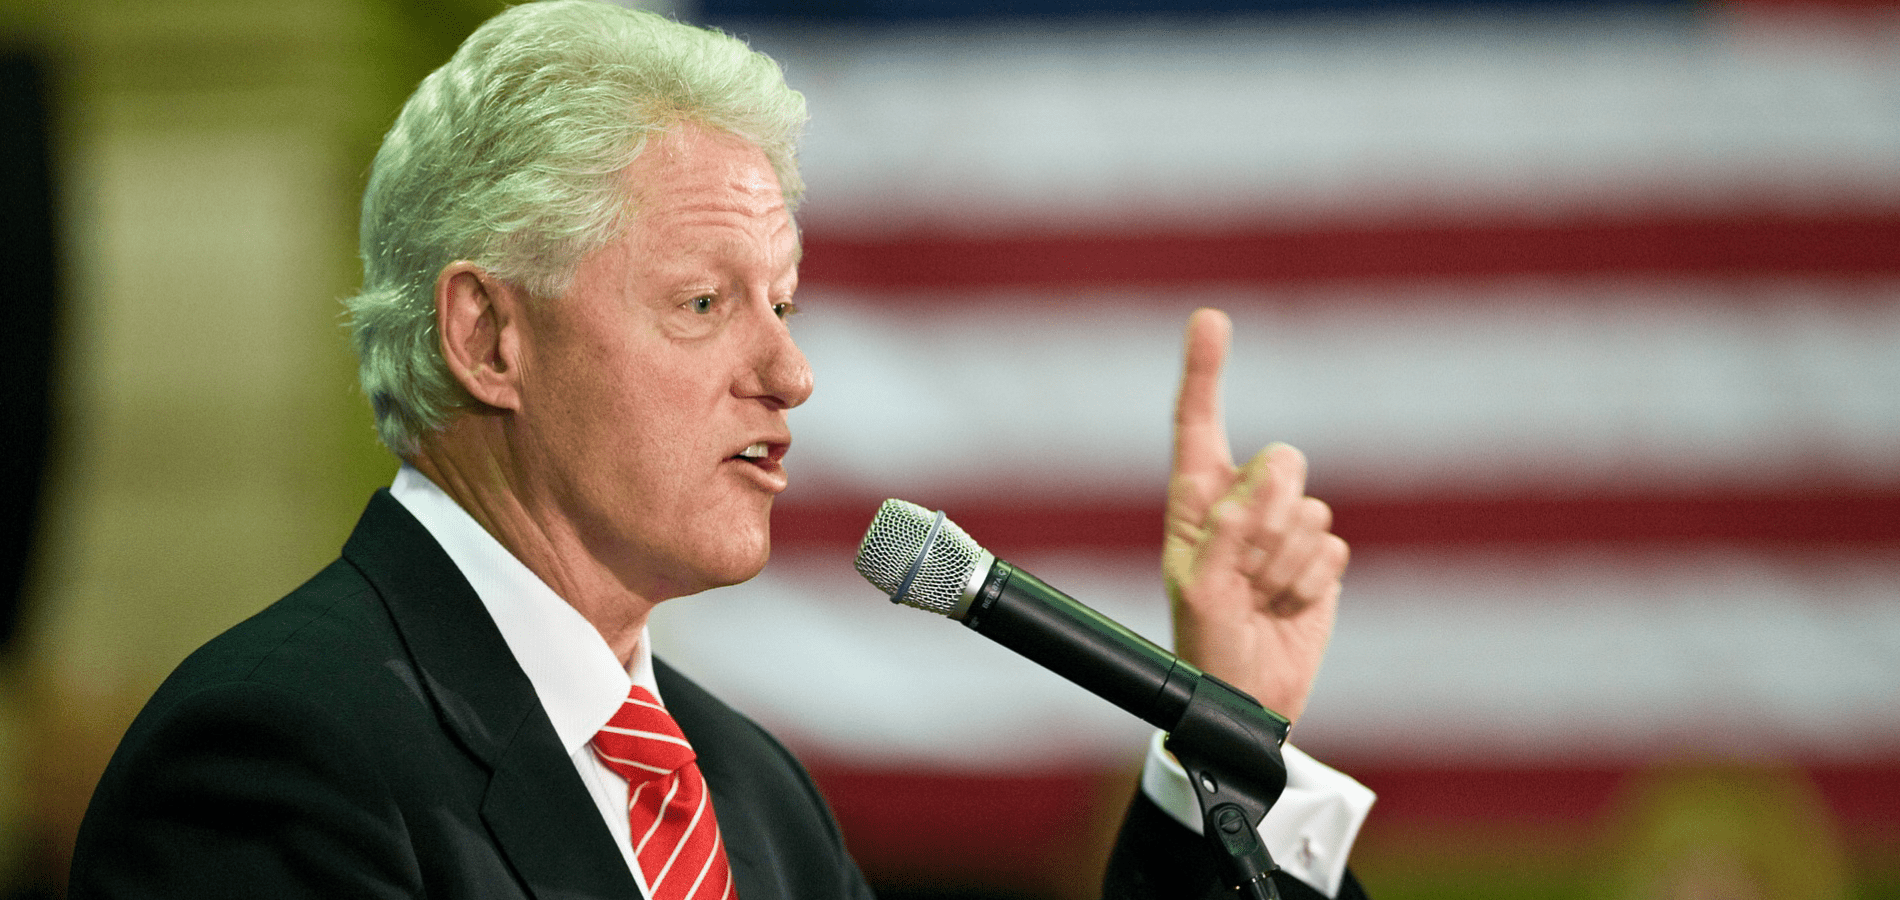 Bill Clinton giving speech